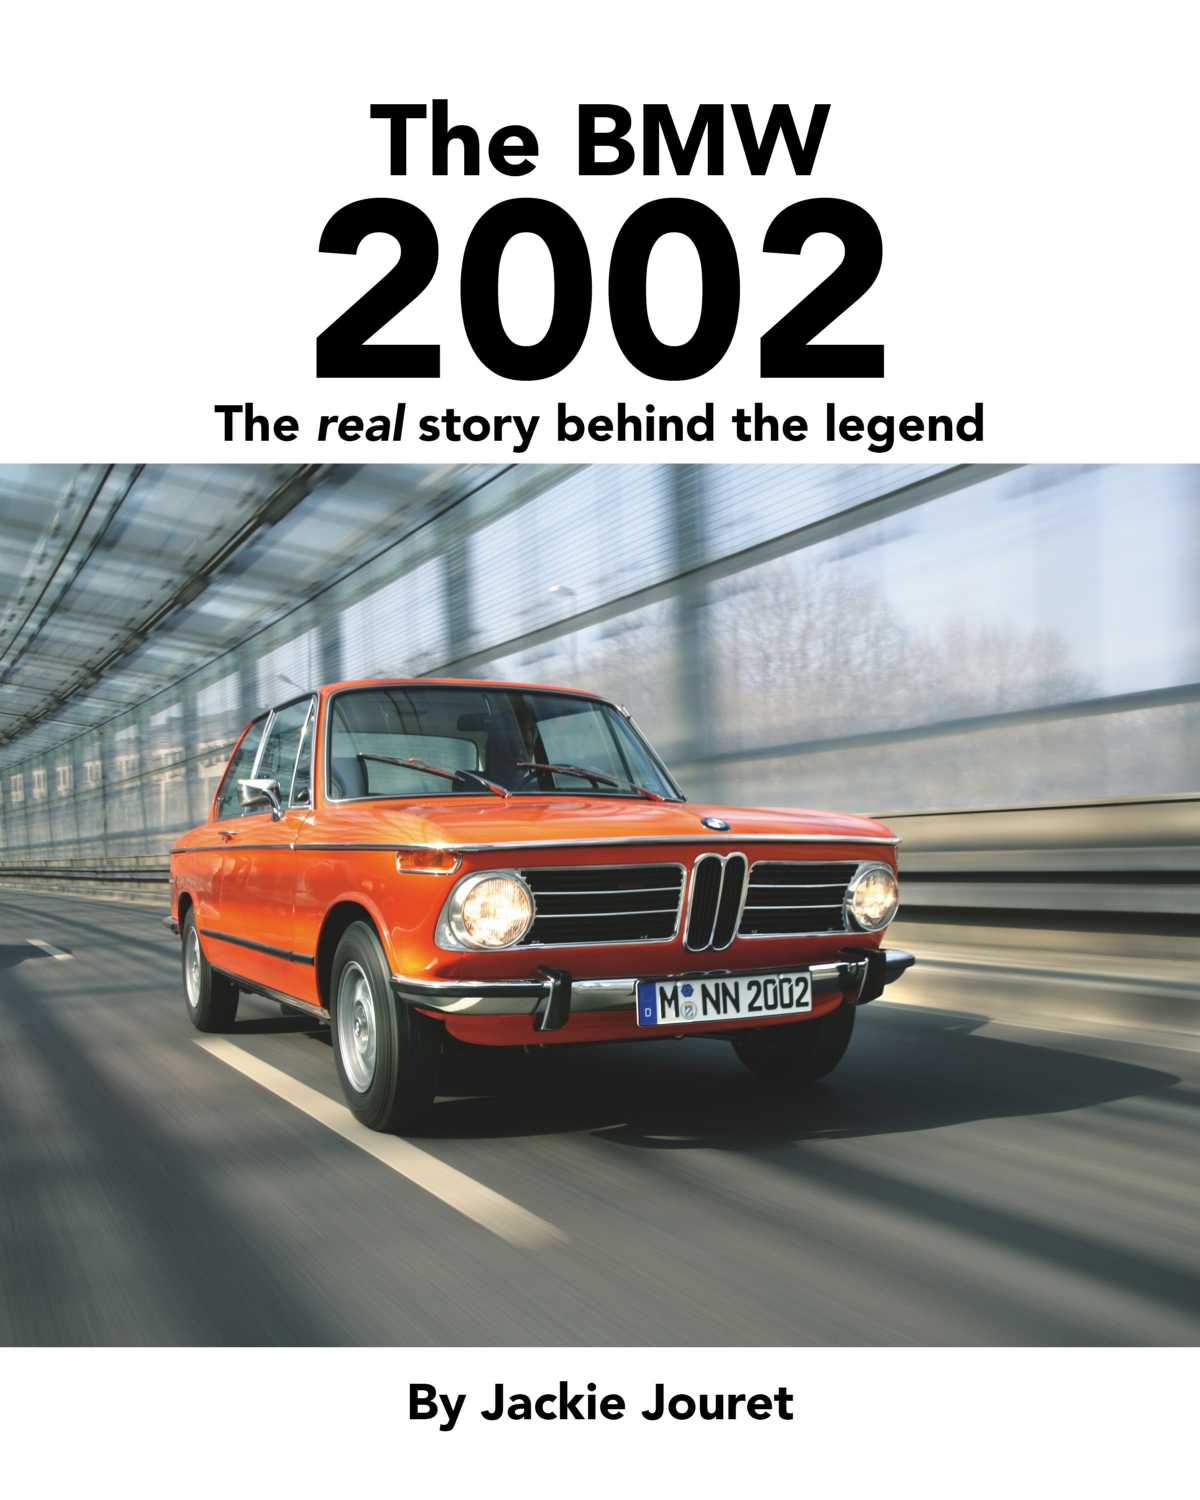 BMW History books by Jackie Jouret. (04/2020)